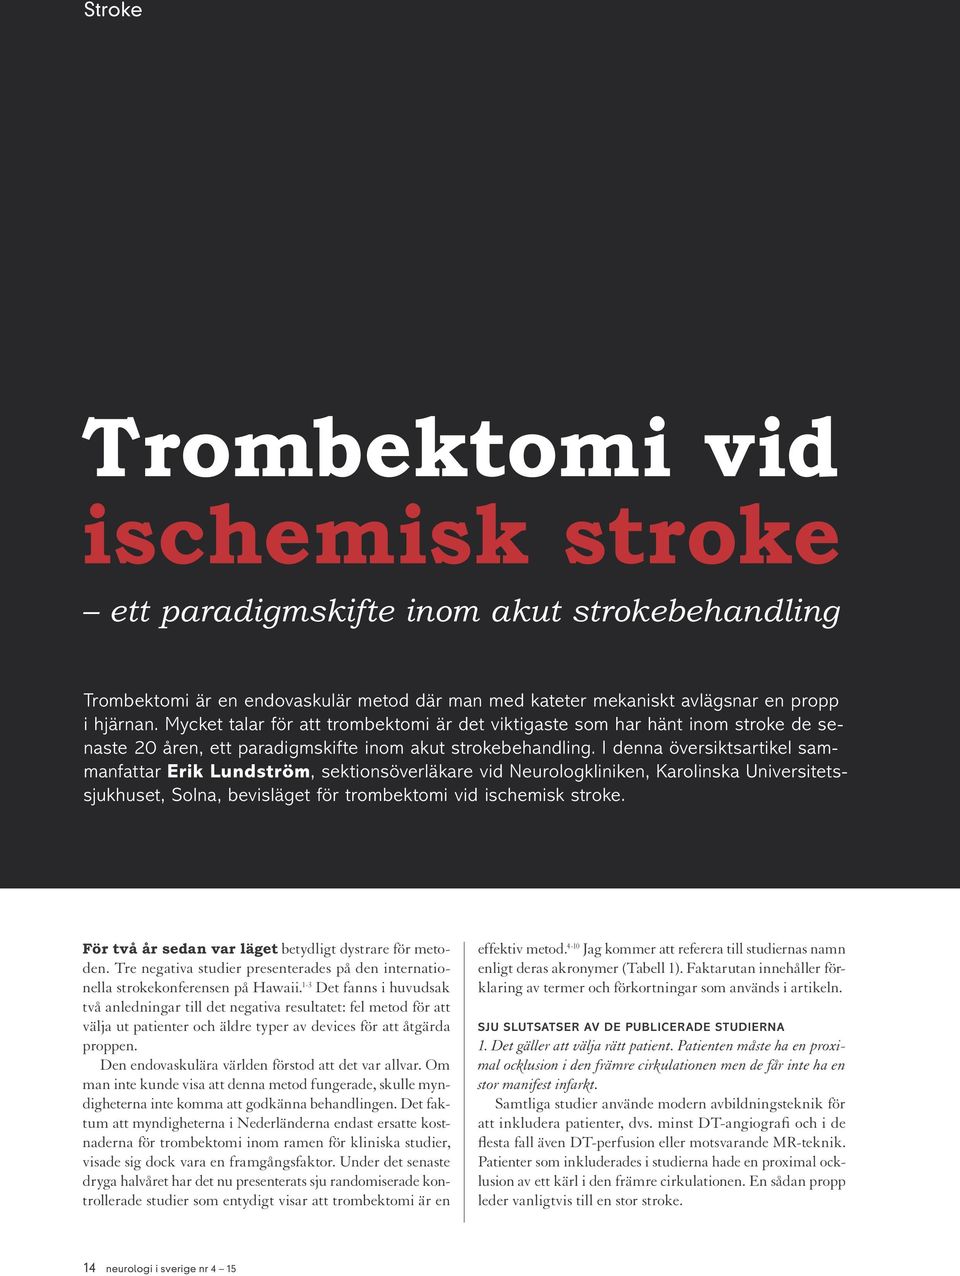 I denna översiktsartikel sammanfattar Erik Lundström, sektionsöverläkare vid Neurologkliniken, Karolinska Universitetssjukhuset, Solna, bevisläget för trombektomi vid ischemisk stroke.